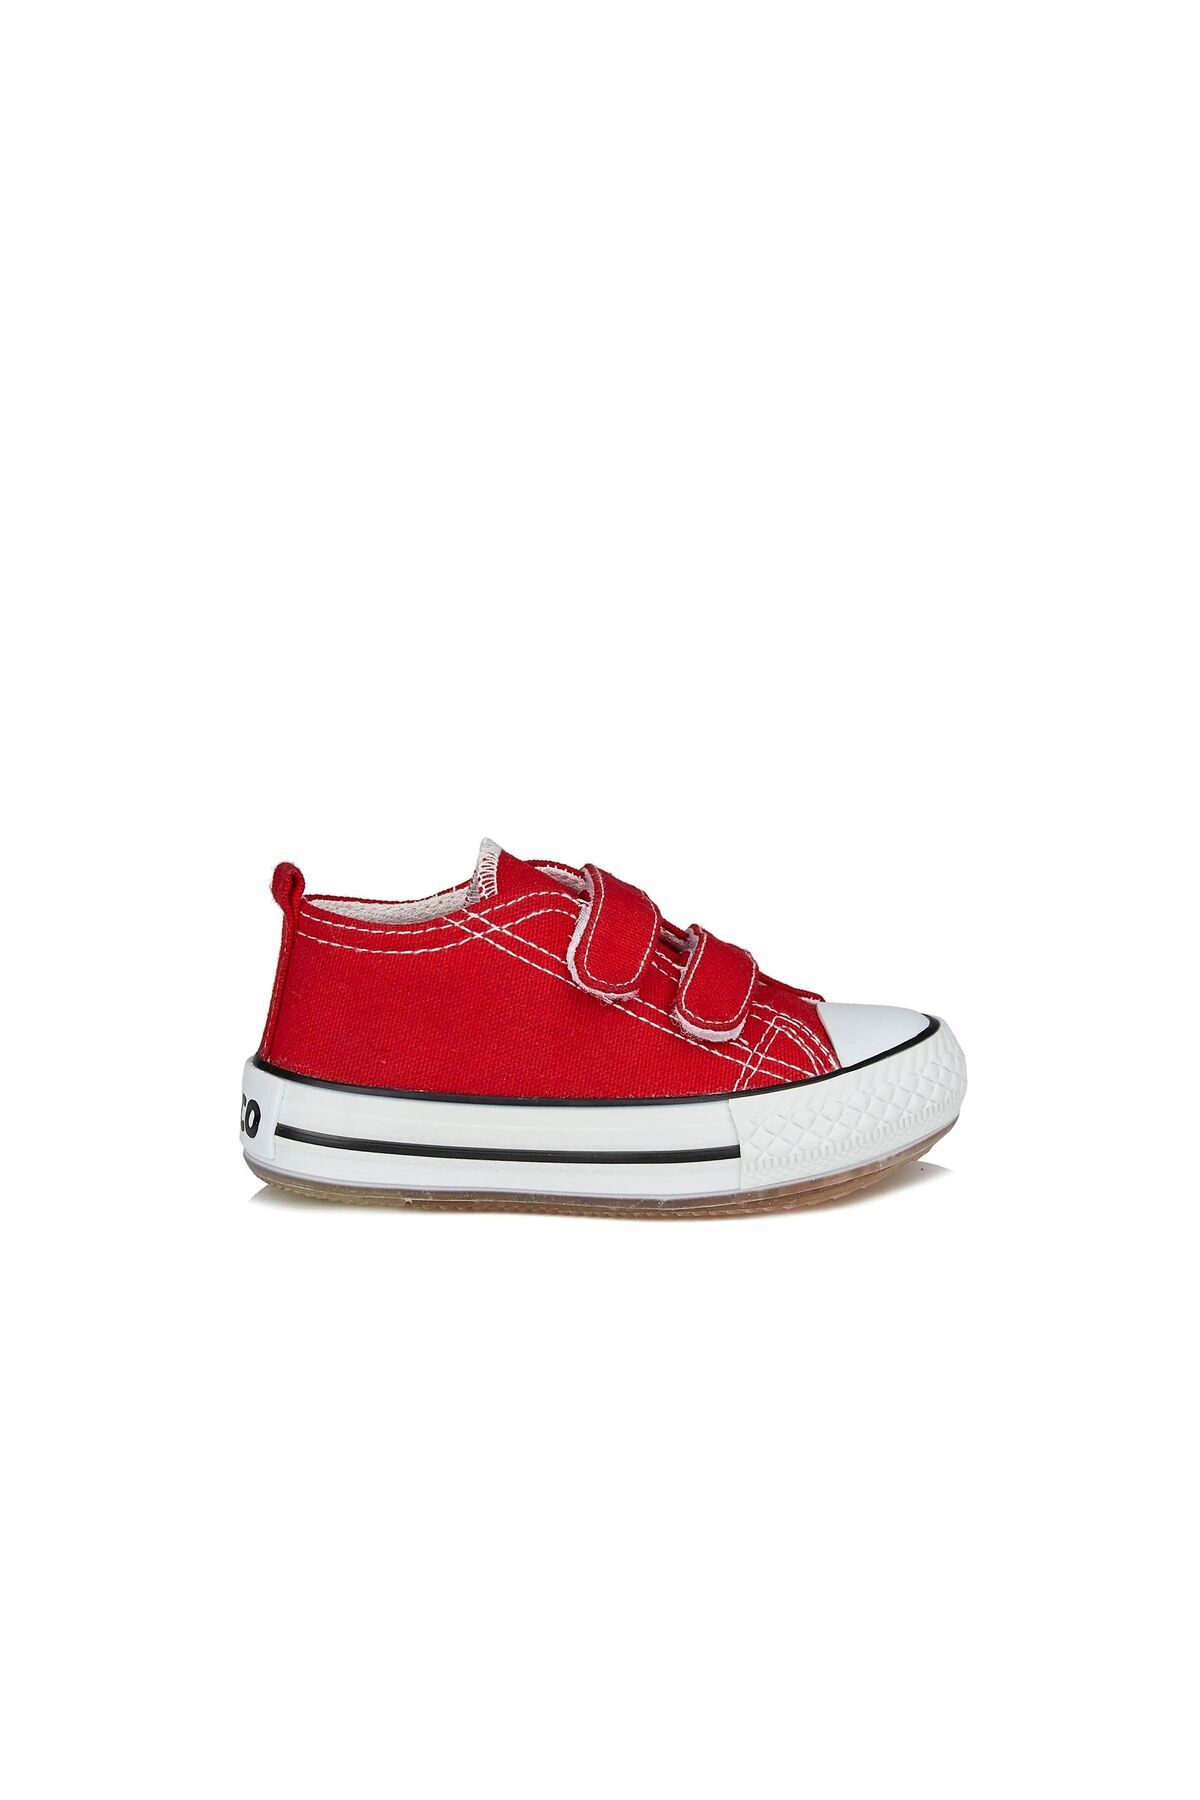 Vicco VİCCO Pino Işıklı Spor Ayakkabı Unisex, Kırmızı